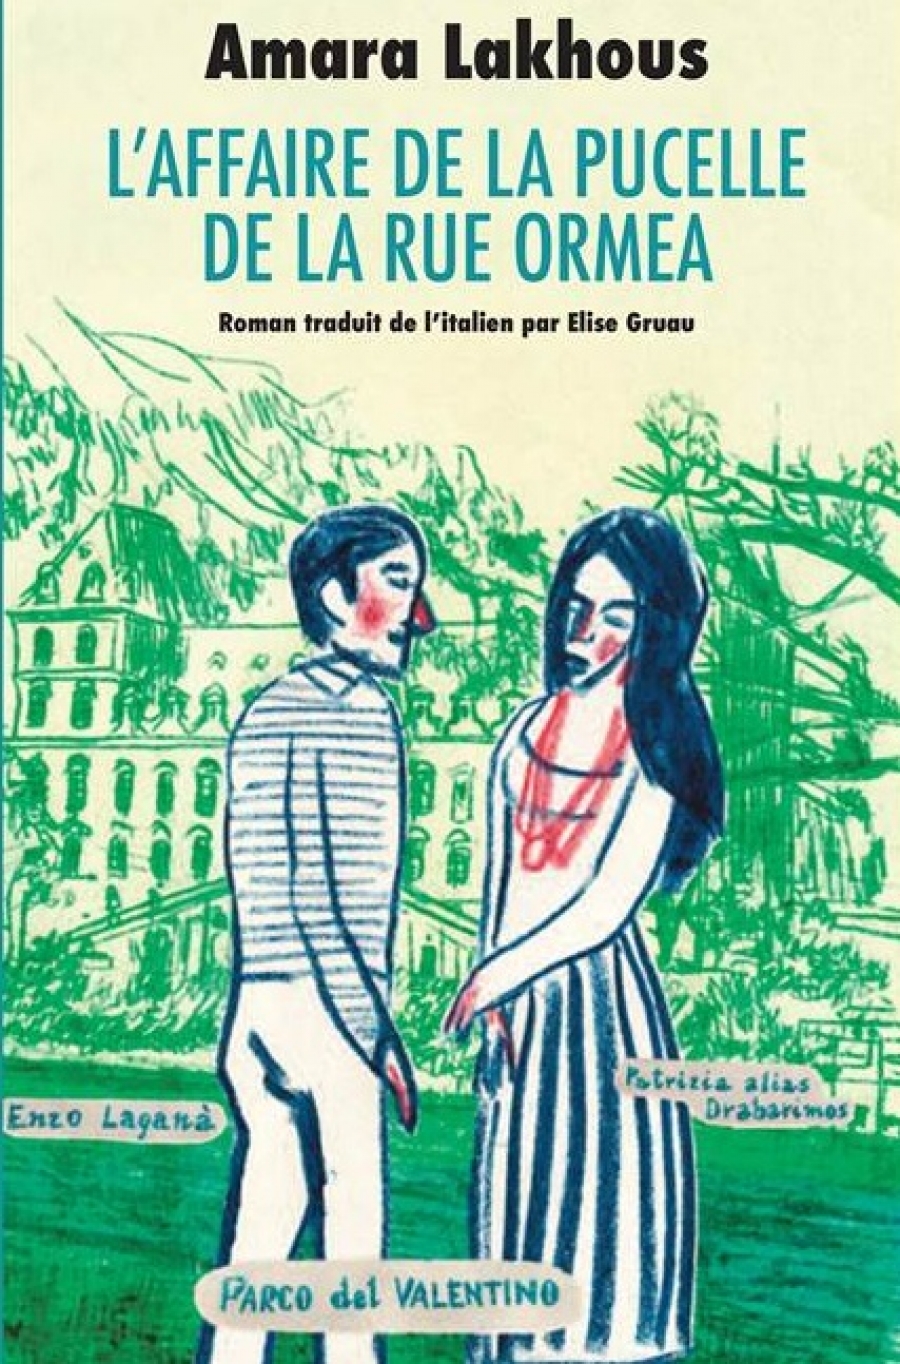 Nouveau roman de Amara Lakhous